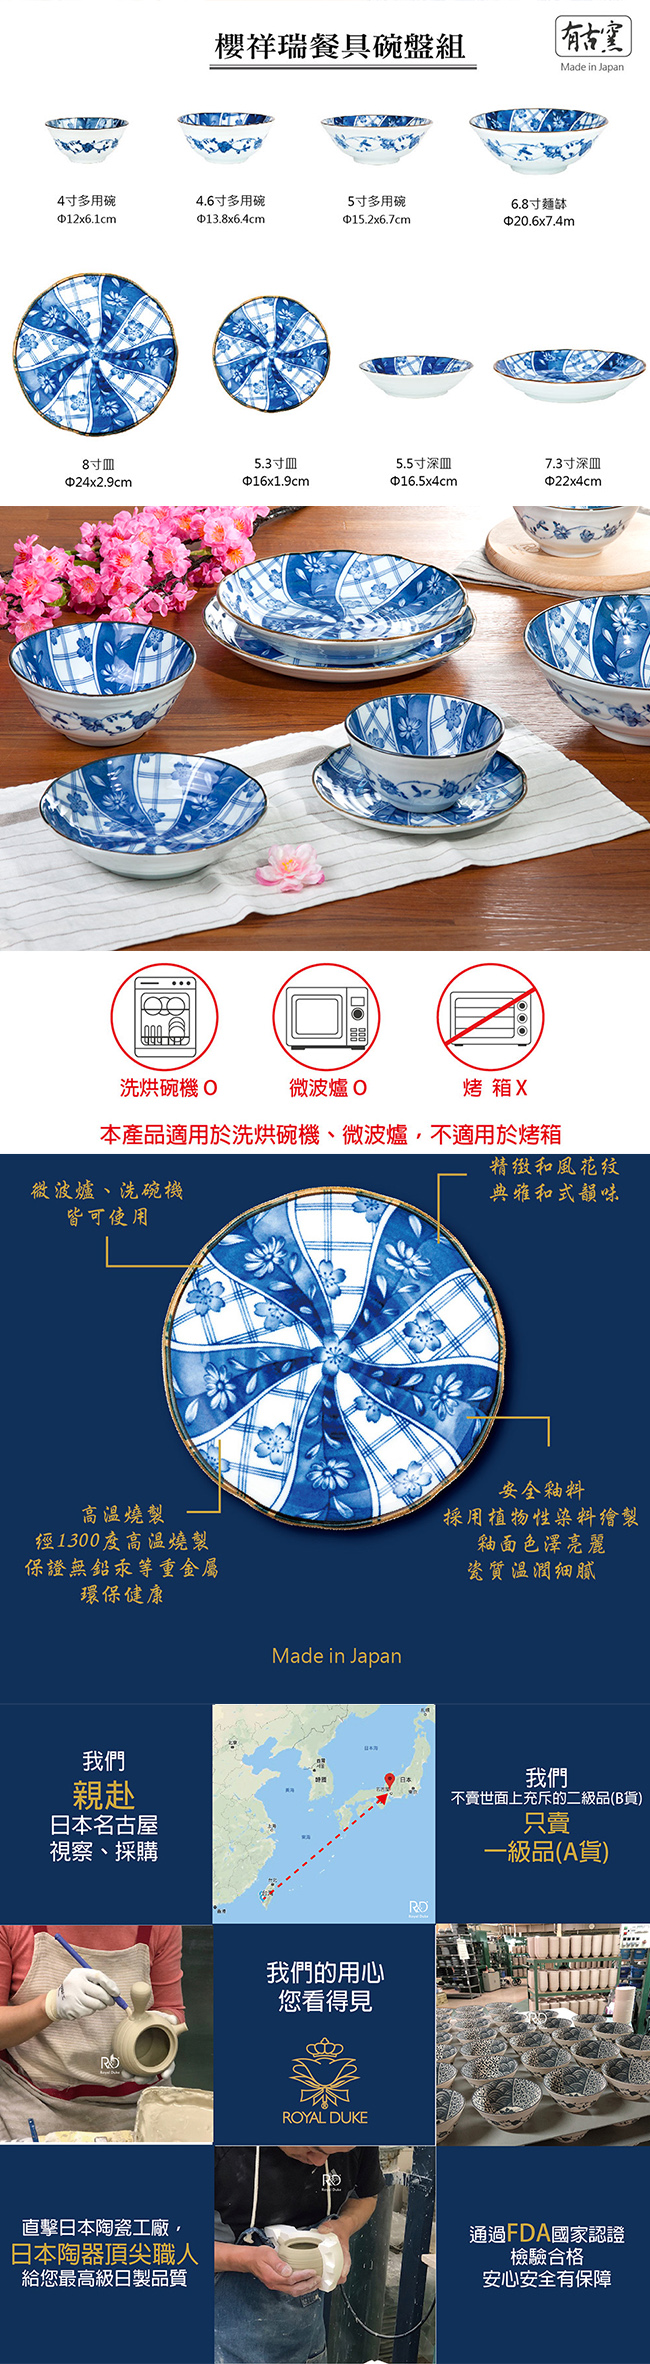 Royal Duke 日本製櫻祥瑞陶瓷餐具組/碗盤8件組(日式和風)